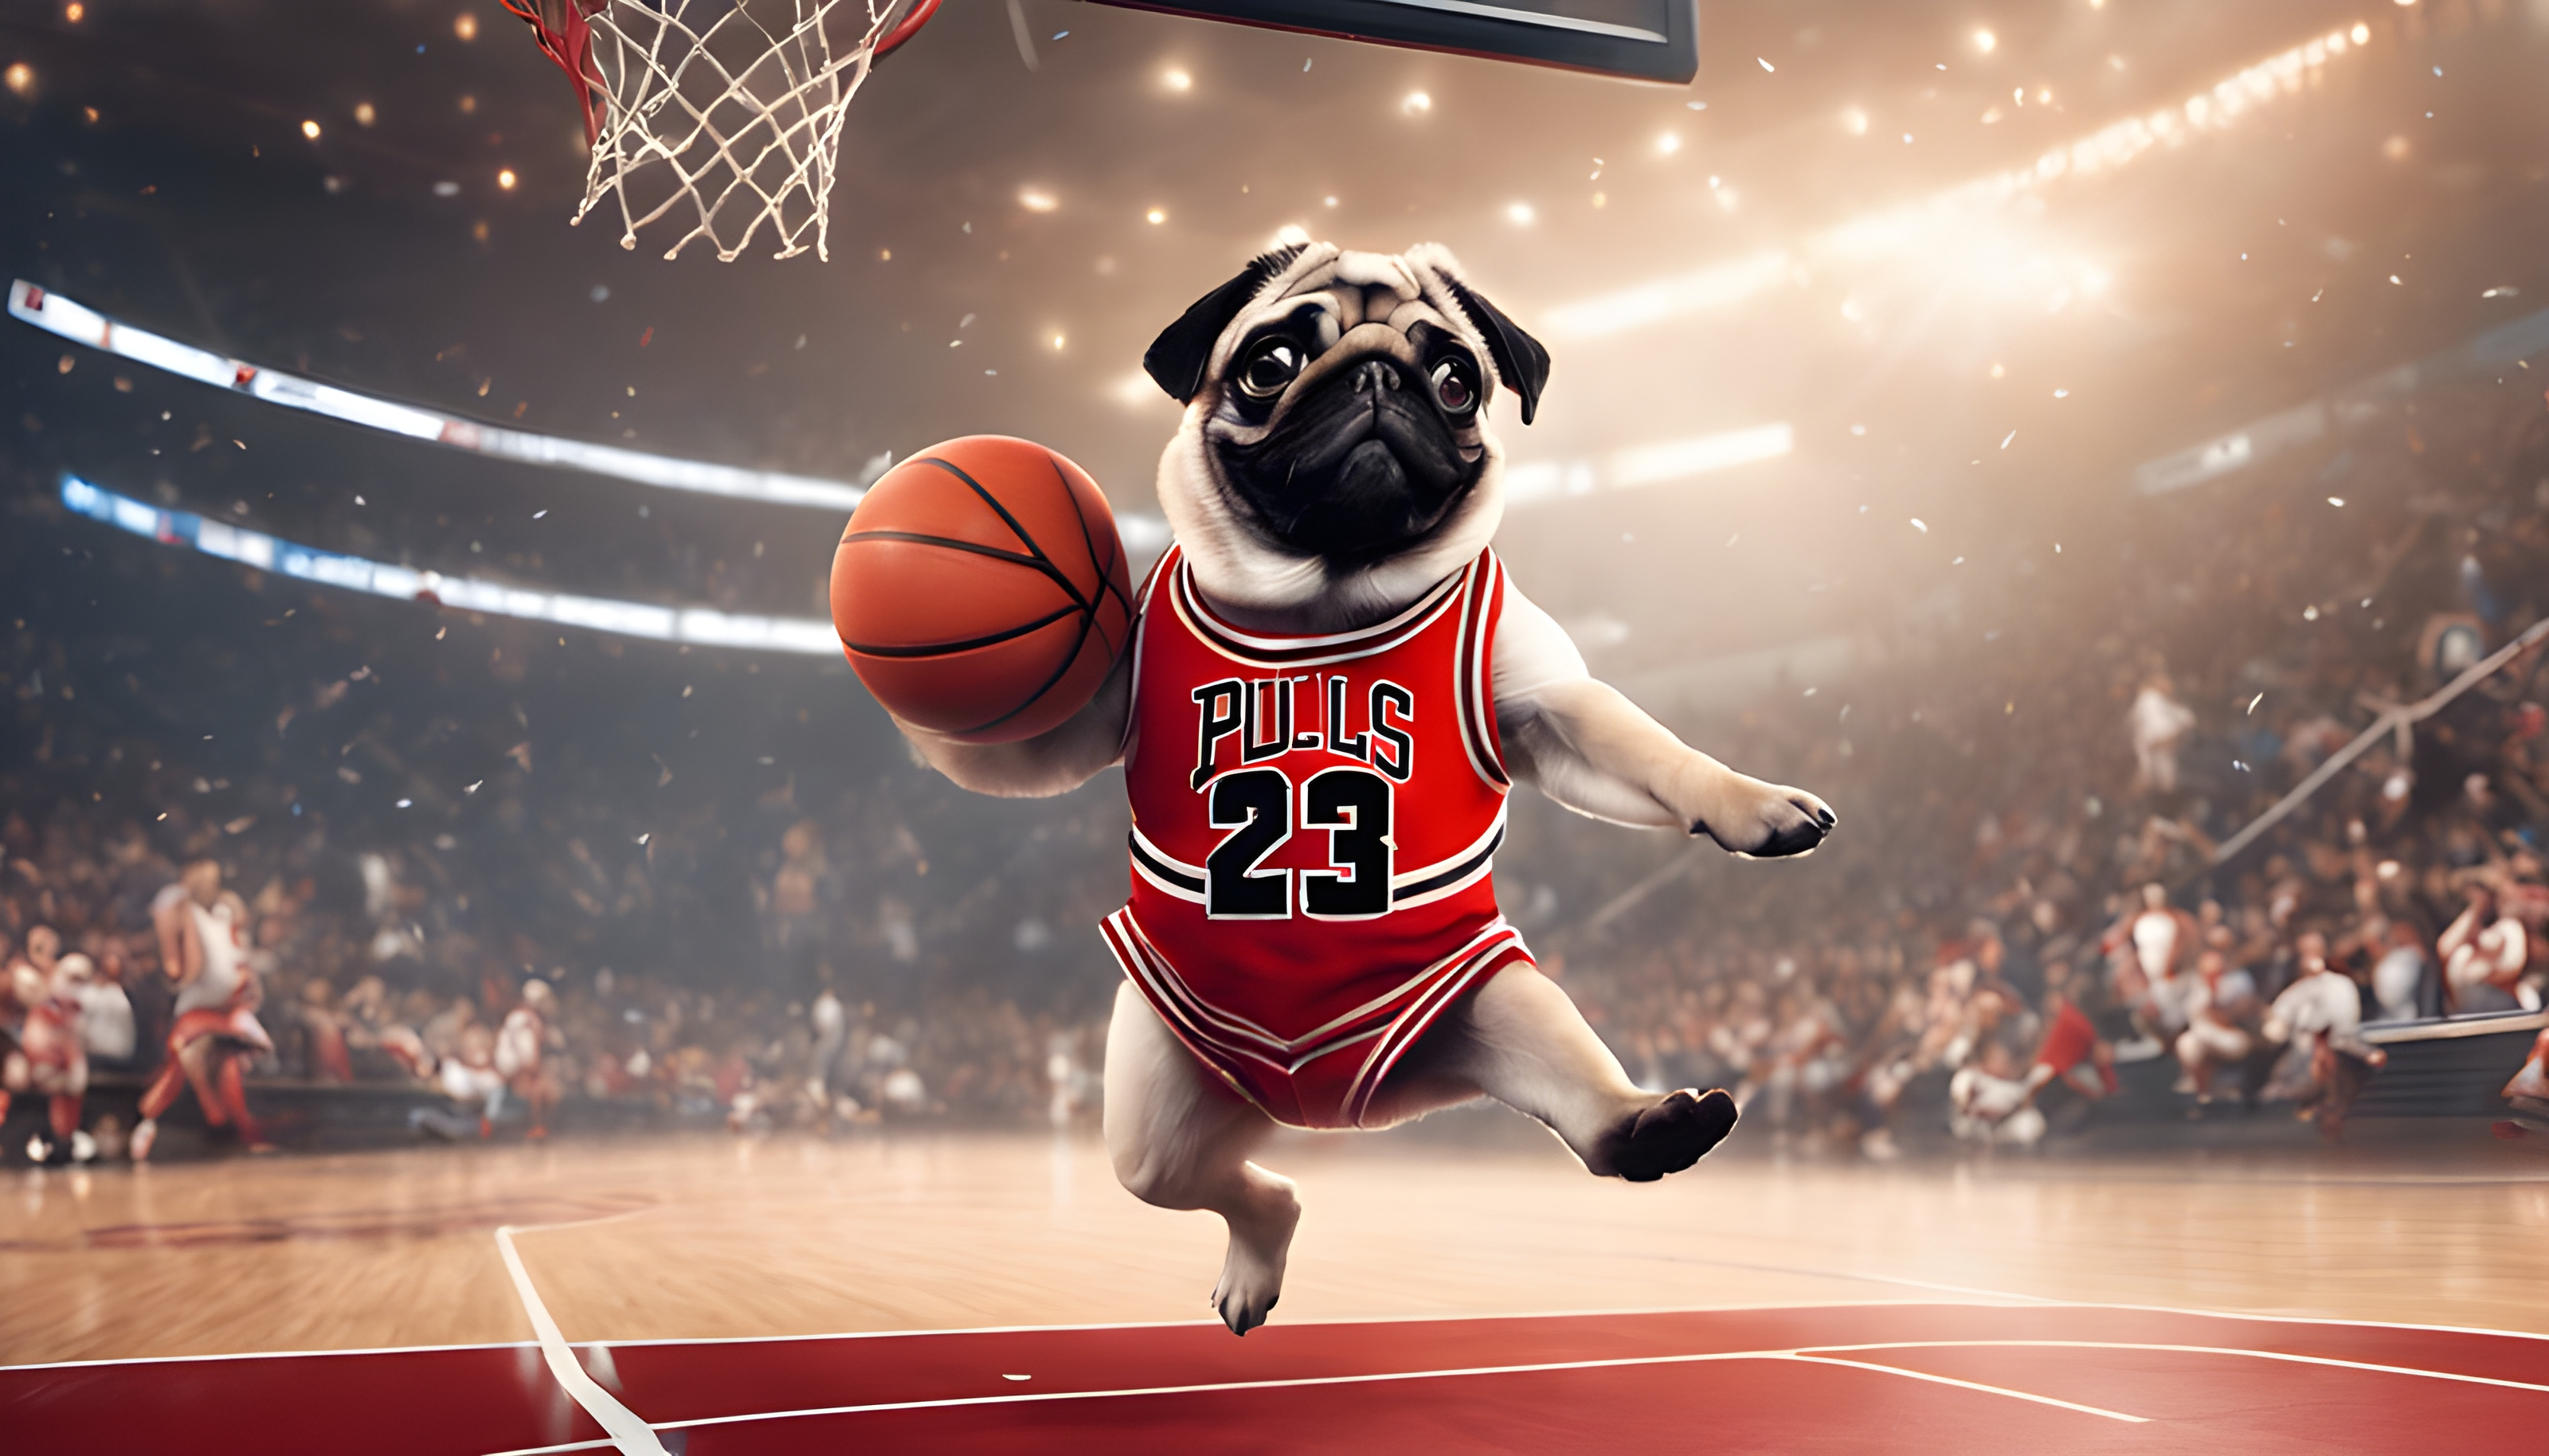 ทำภาพของหมาปั๊กในบทบาทของ Michael Jordan กำลังดังก์ลูกบาสในท่วงท่าที่สวยงาม